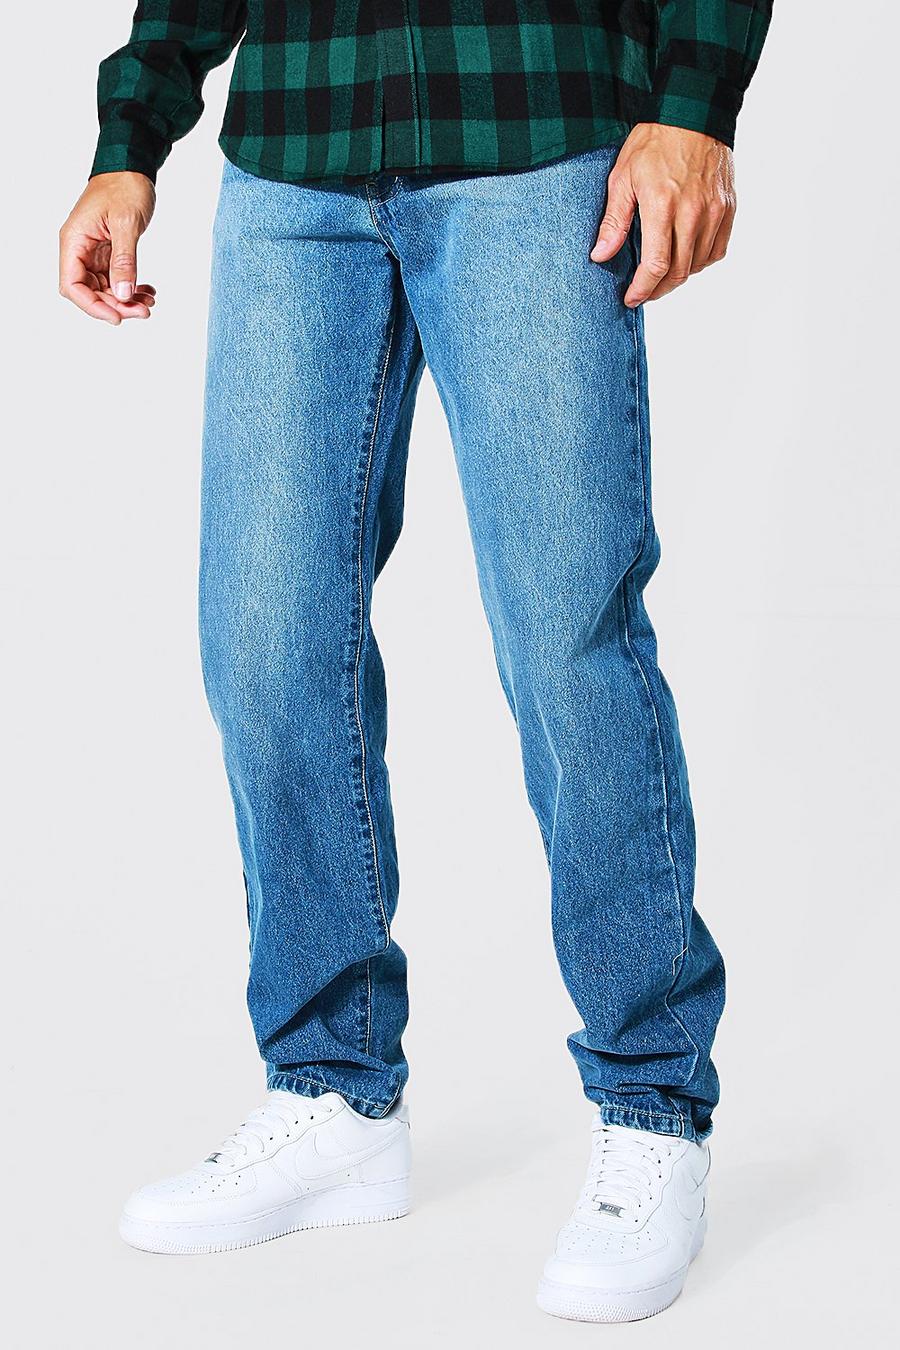 Jeans Tall in taglio rilassato con cotone riciclato, Mid blue azzurro